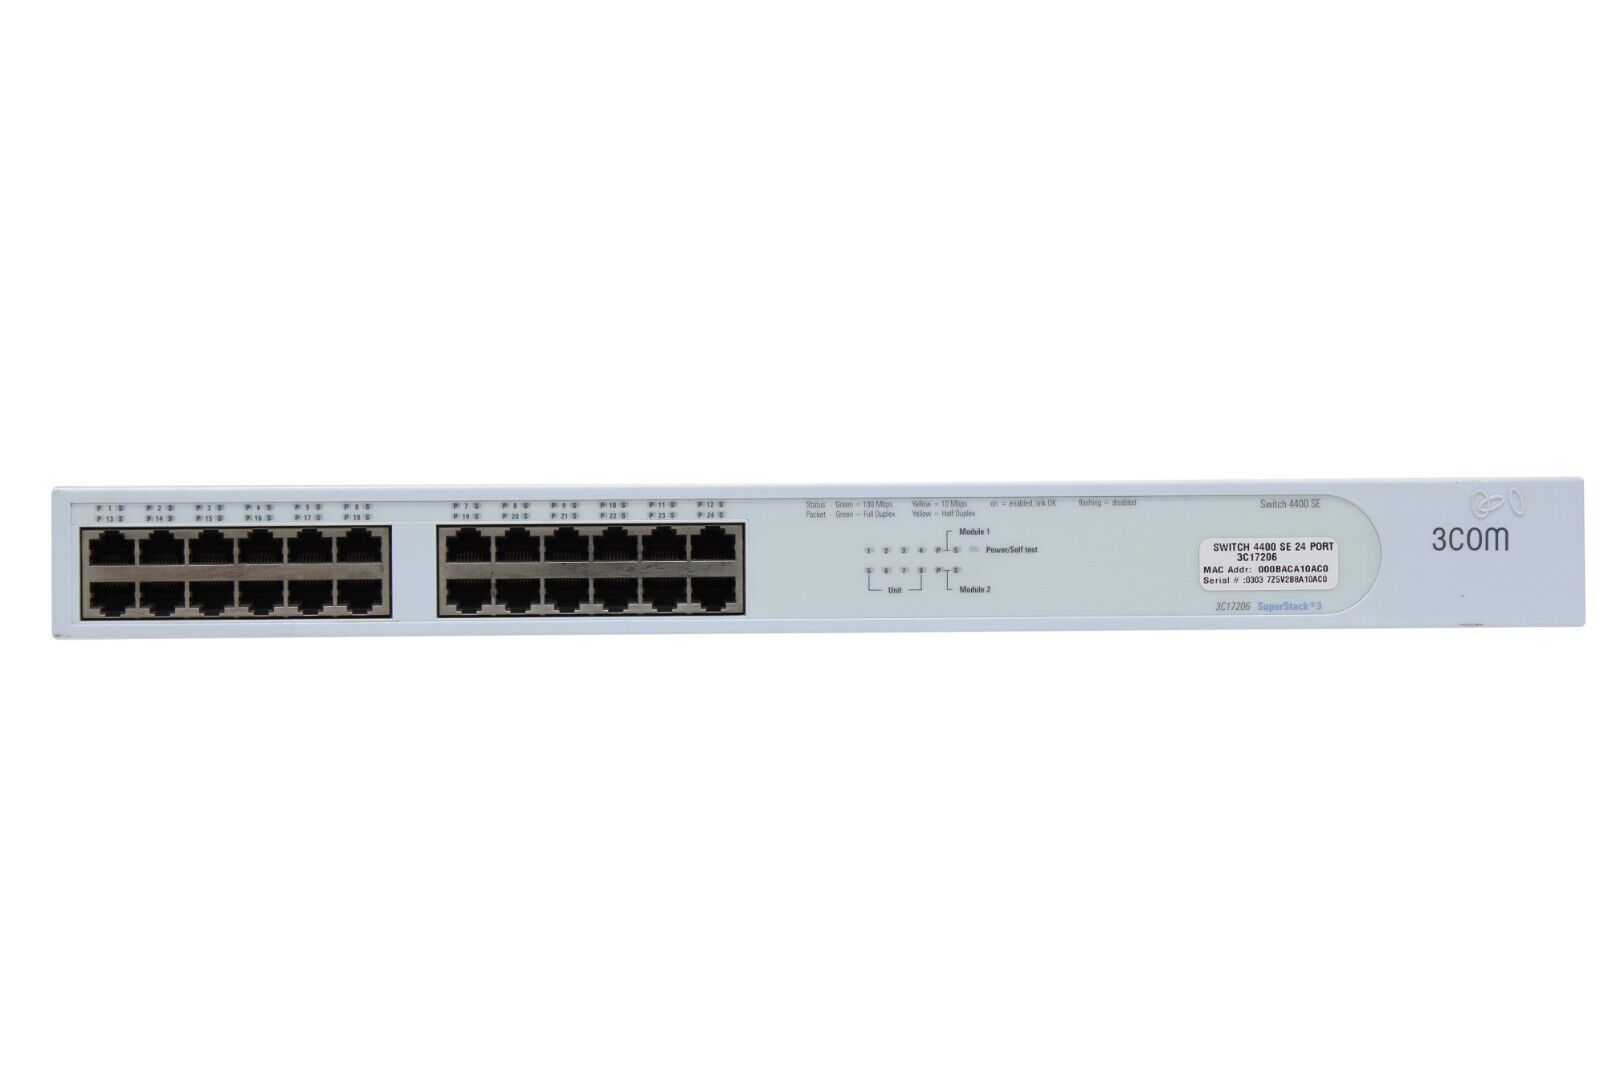 3Com 3C17206 SuperStack 3 4400 SE 24 x RJ-45 Port 10/100 Ethernet Network Switch